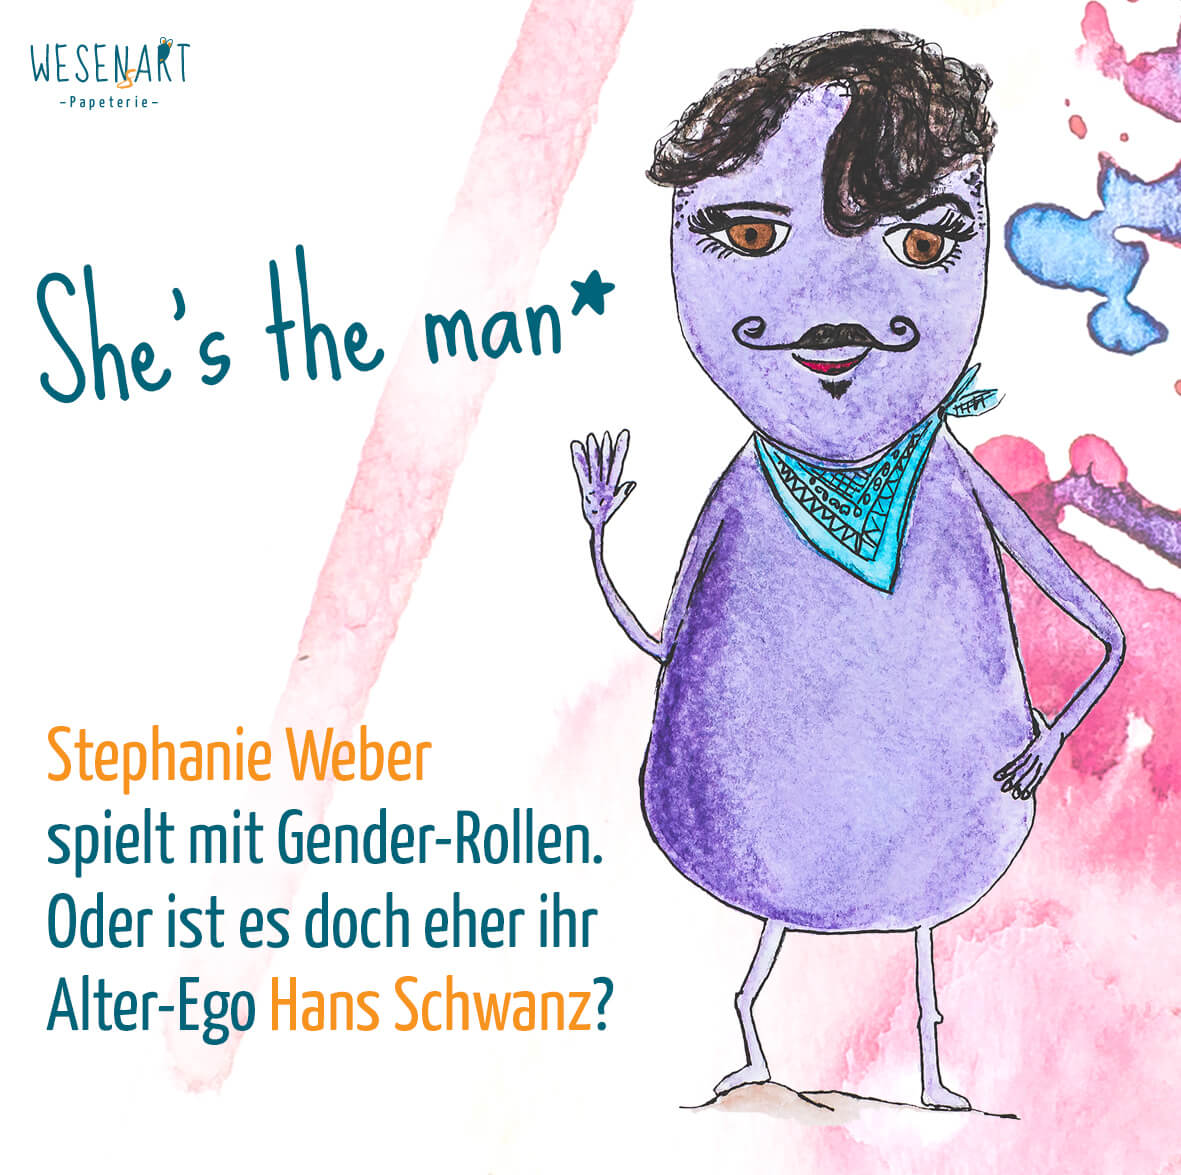 Stephanie Weber als Hans Schwanz als Wesen